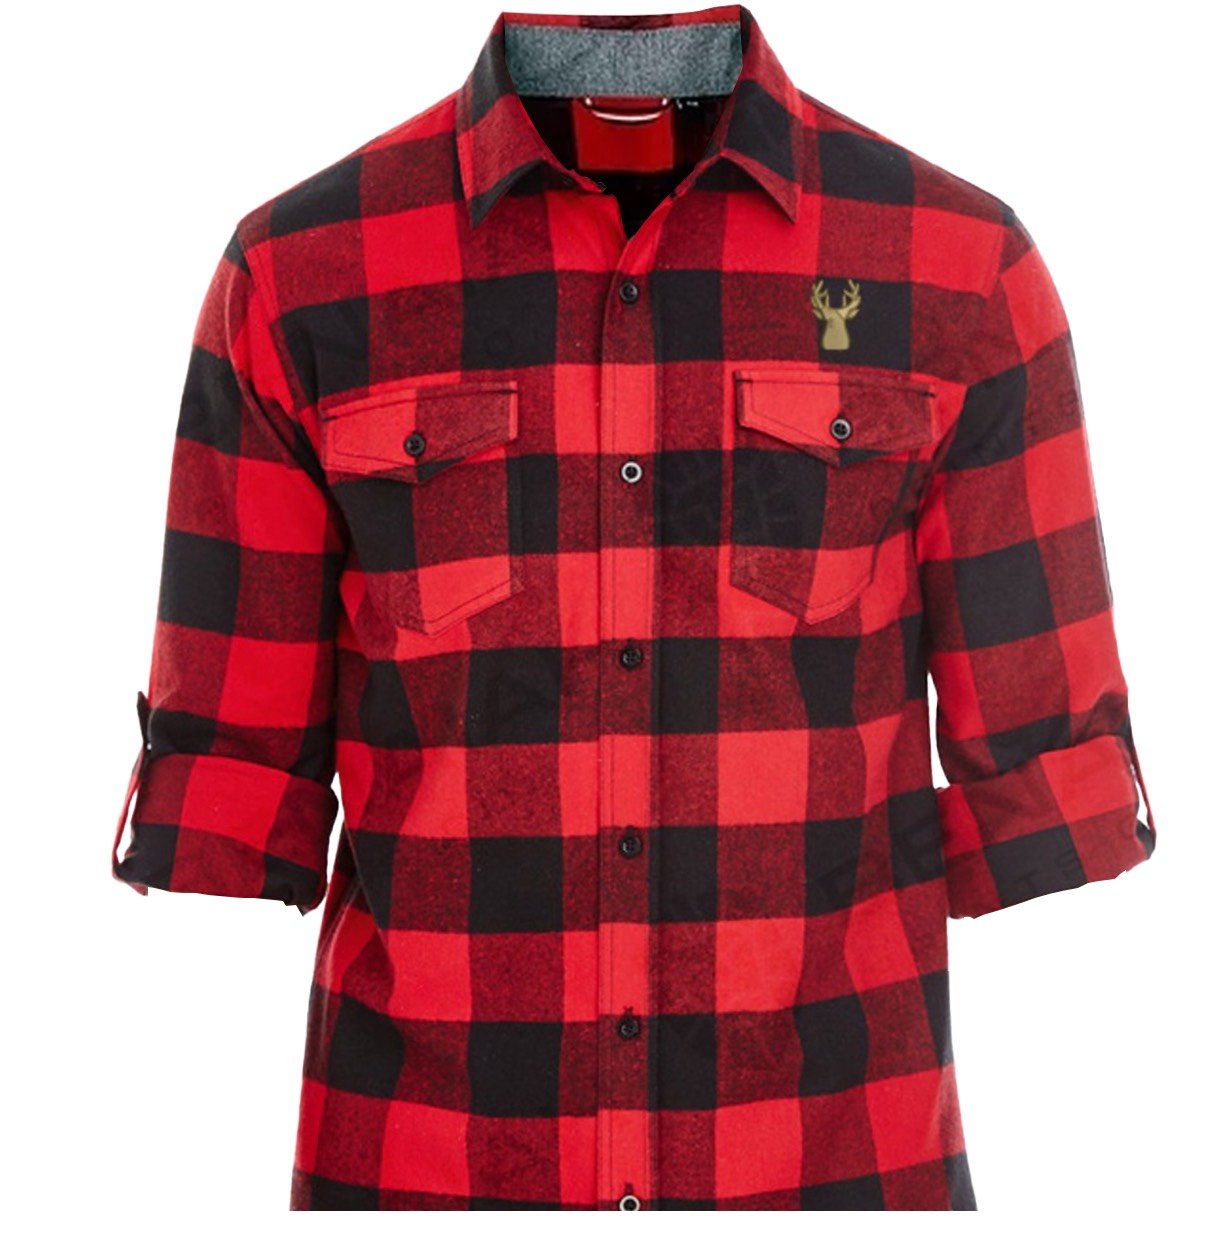 The Elk Lumberjack Flannel Long Sleeve Shirt